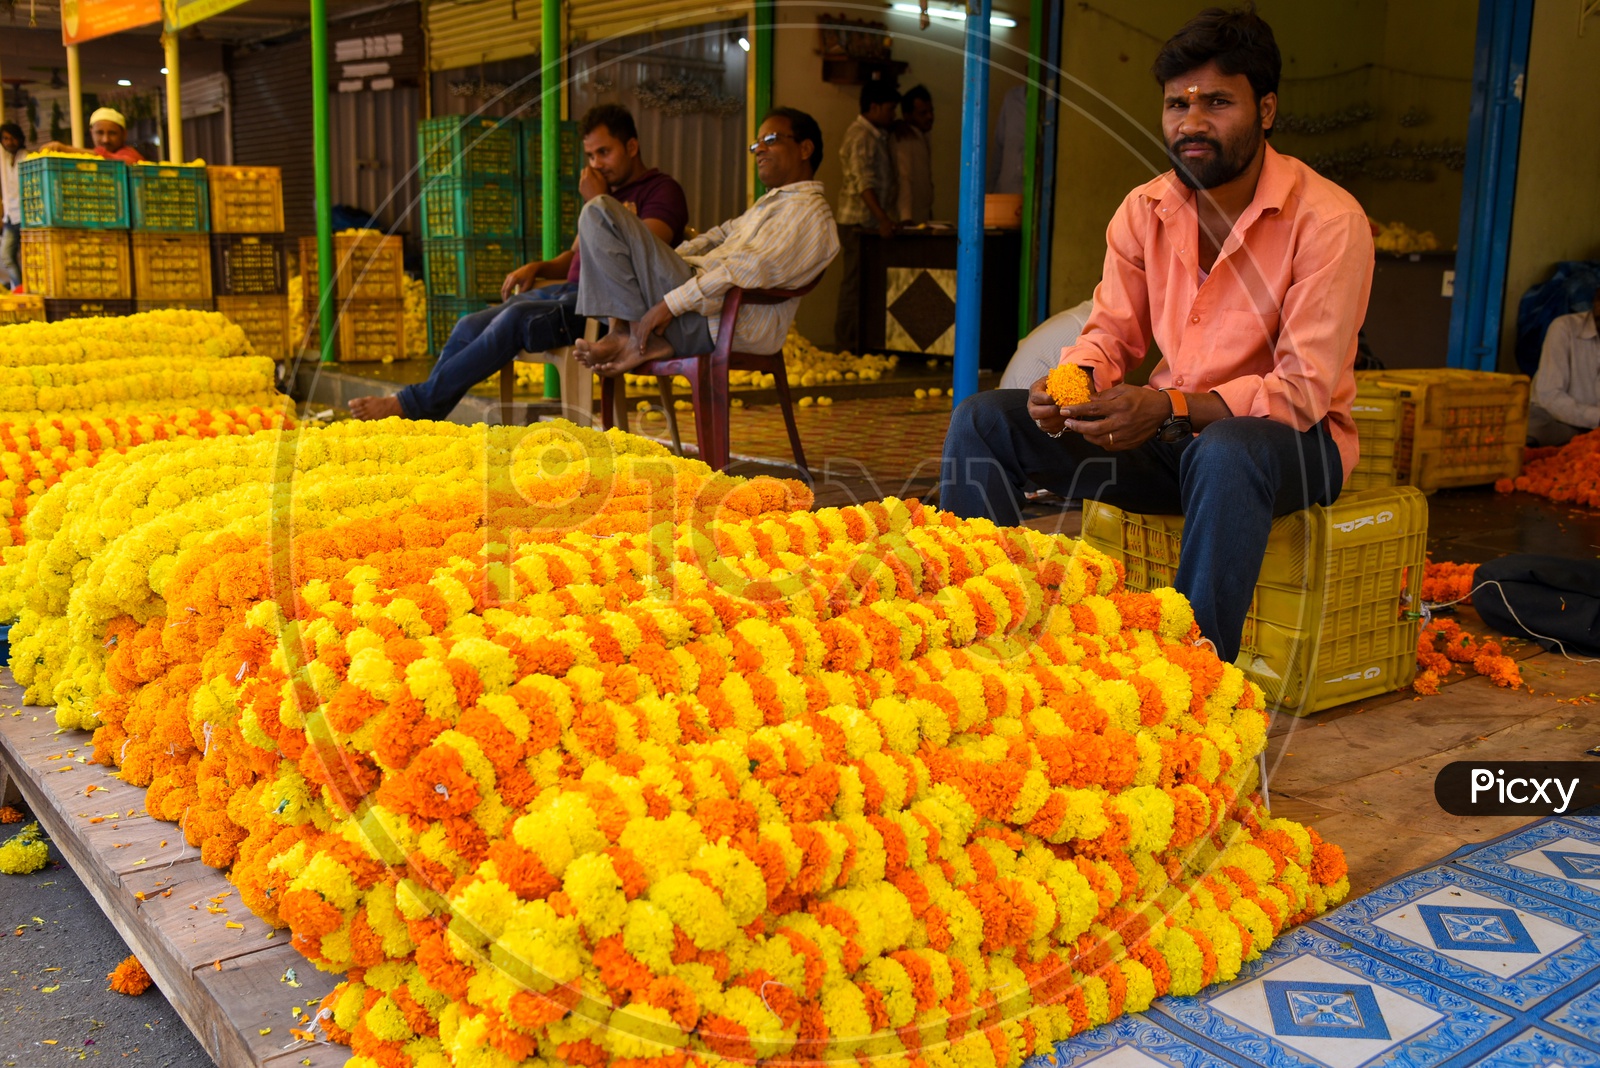 Flower vendor at flower market in Hyderabad